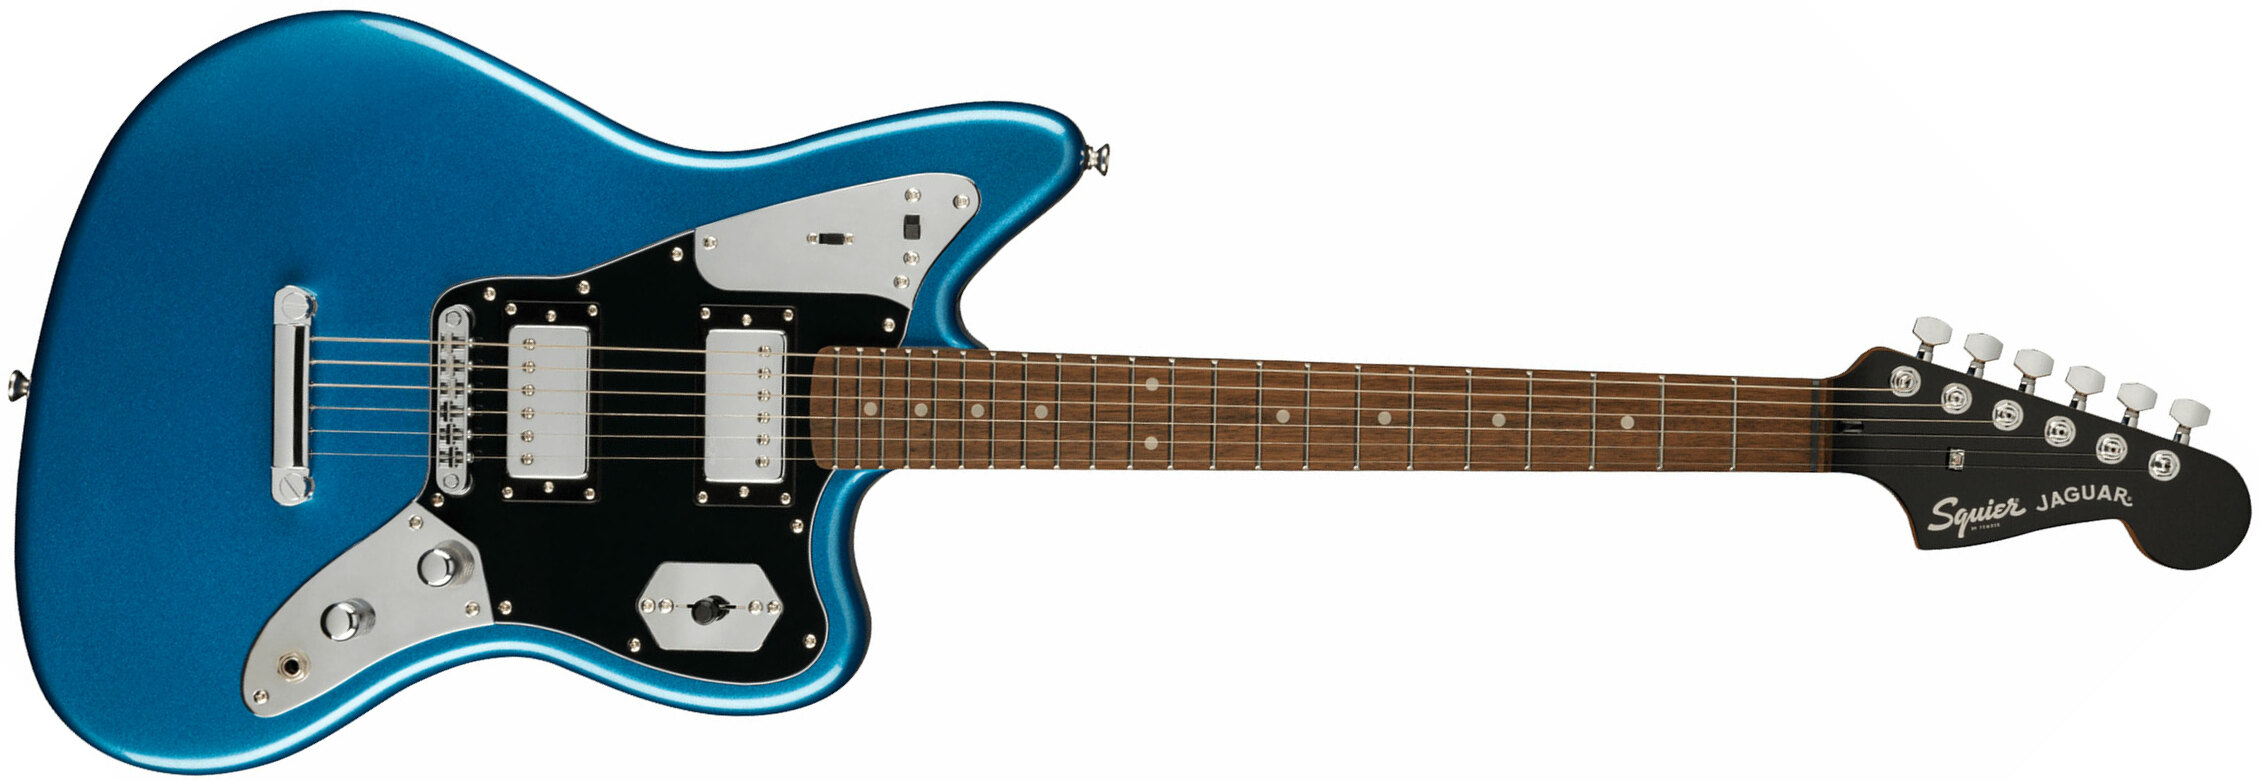 Squier Jaguar Contemporary Hh St Fsr Ltd Ht Lau - Lake Placid Blue - Retro-rock elektrische gitaar - Main picture